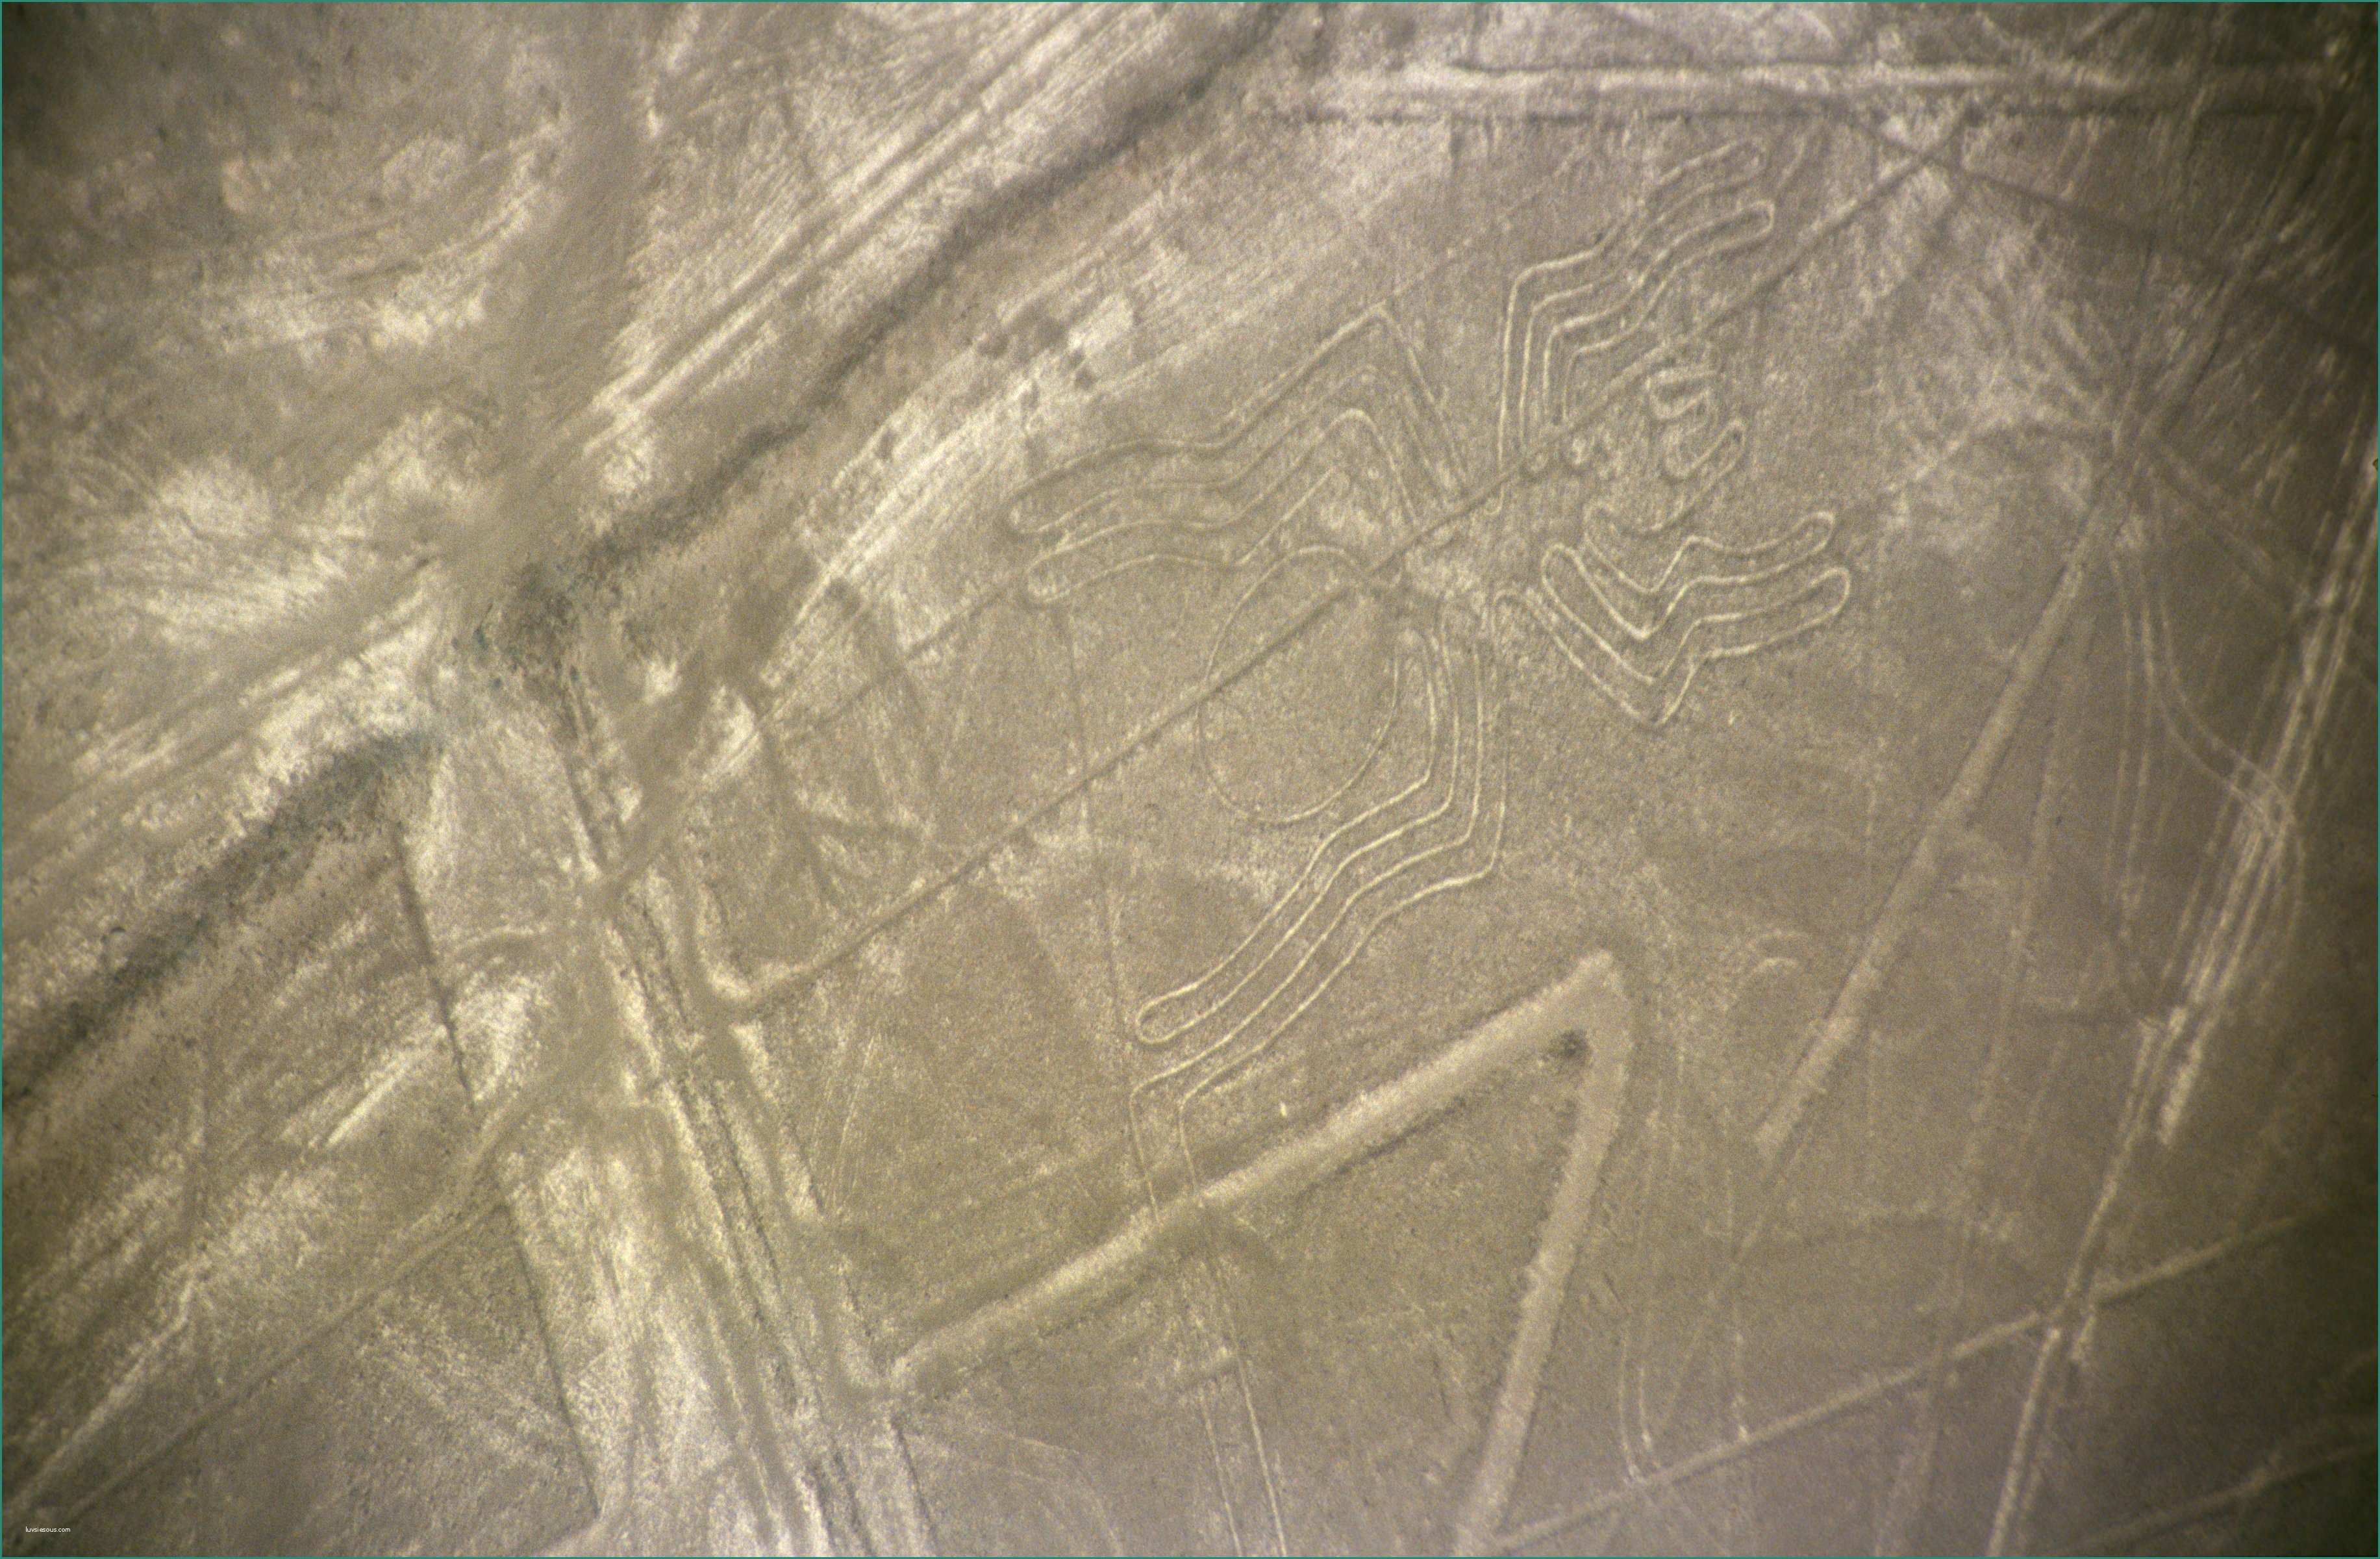 Planisfero Per Bambini E Linee Di Nazca